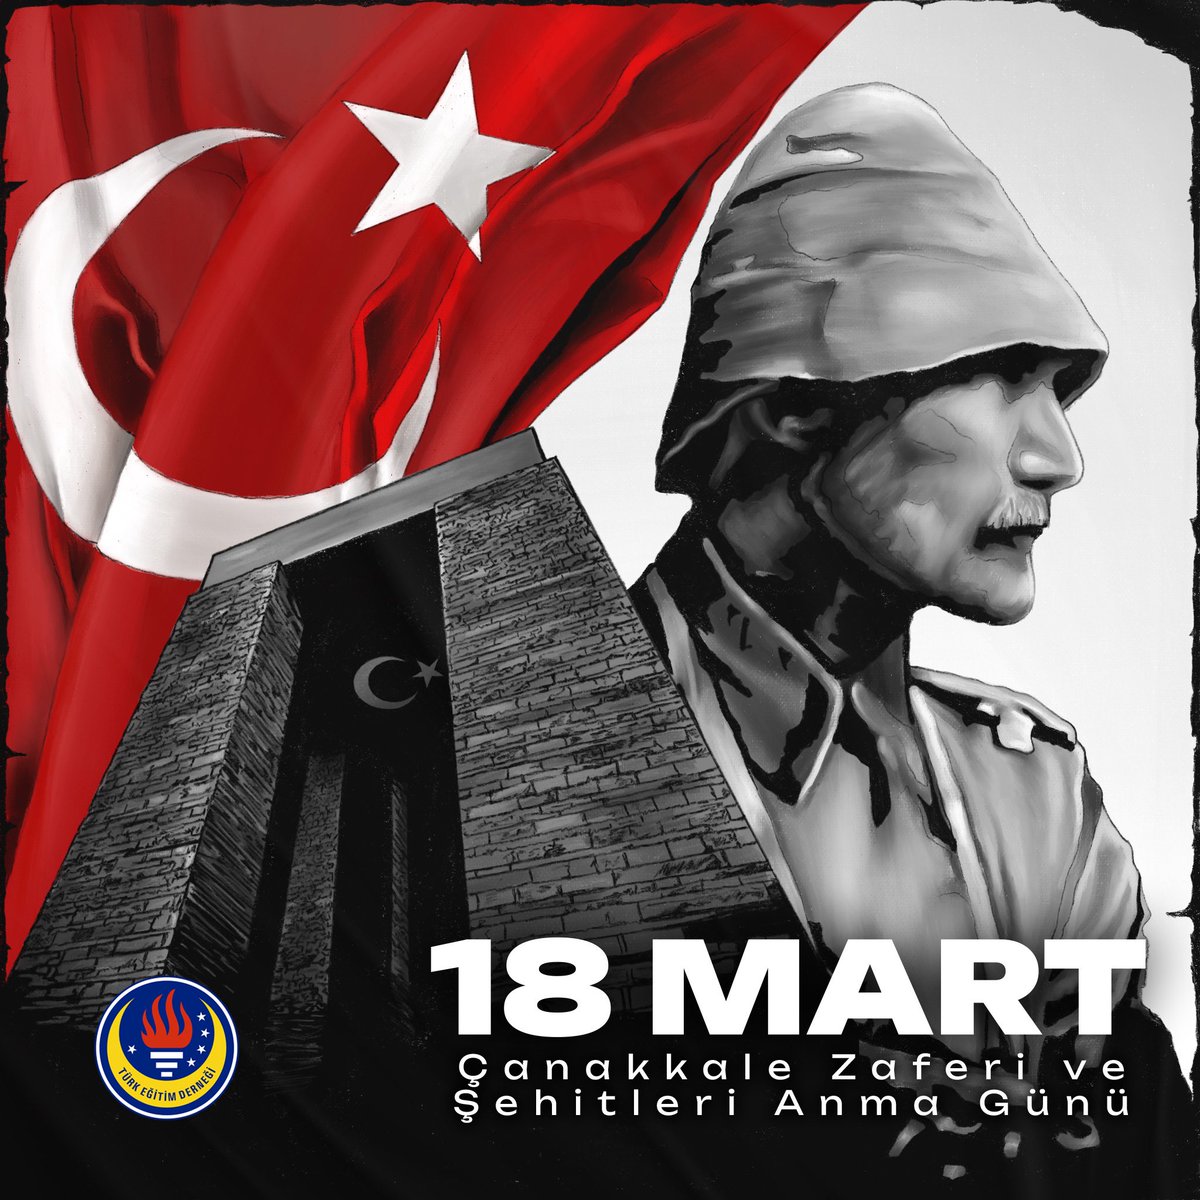 18 Mart Çanakkale Zaferi ve Şehitleri Anma Günü'nde, Gazi Mustafa Kemal Atatürk'ün önderliğindeki eşsiz zaferimizi ve bu uğurda canını feda eden kahraman şehitlerimizi saygıyla anıyoruz. #18MartÇanakkaleZaferi